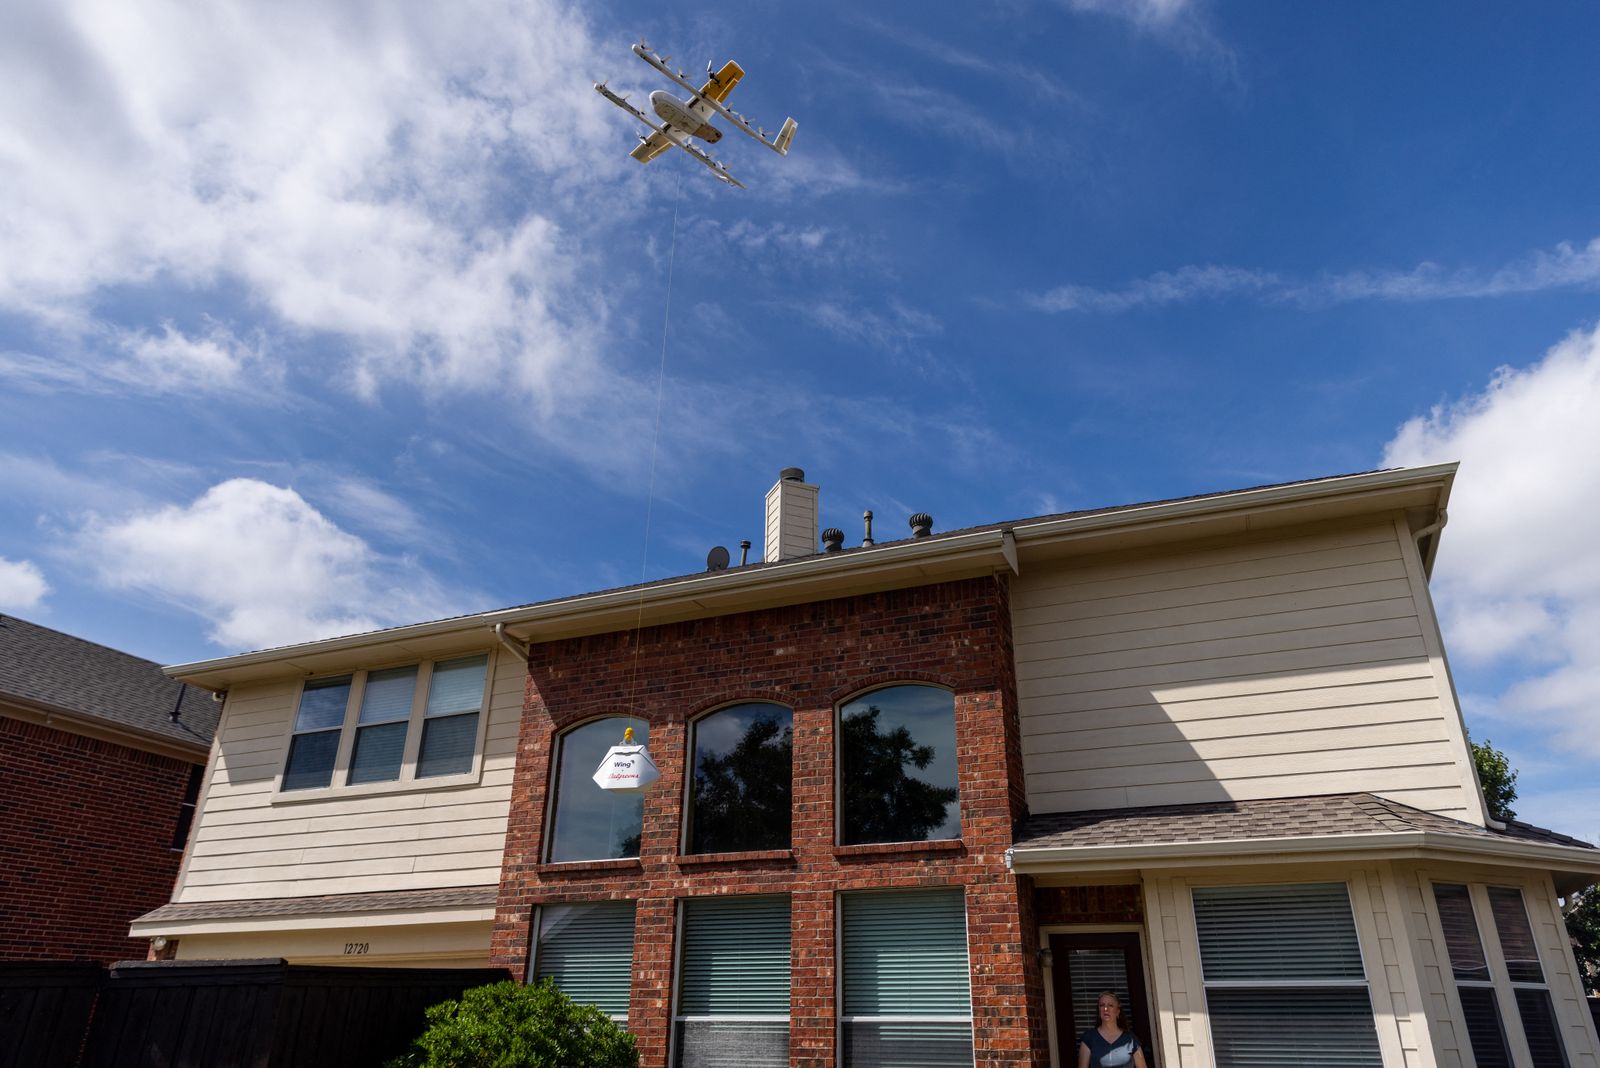 طائرة درون تحلق فوق أحد المنازل خلال توصيلها بعض الطلبات. - AFP